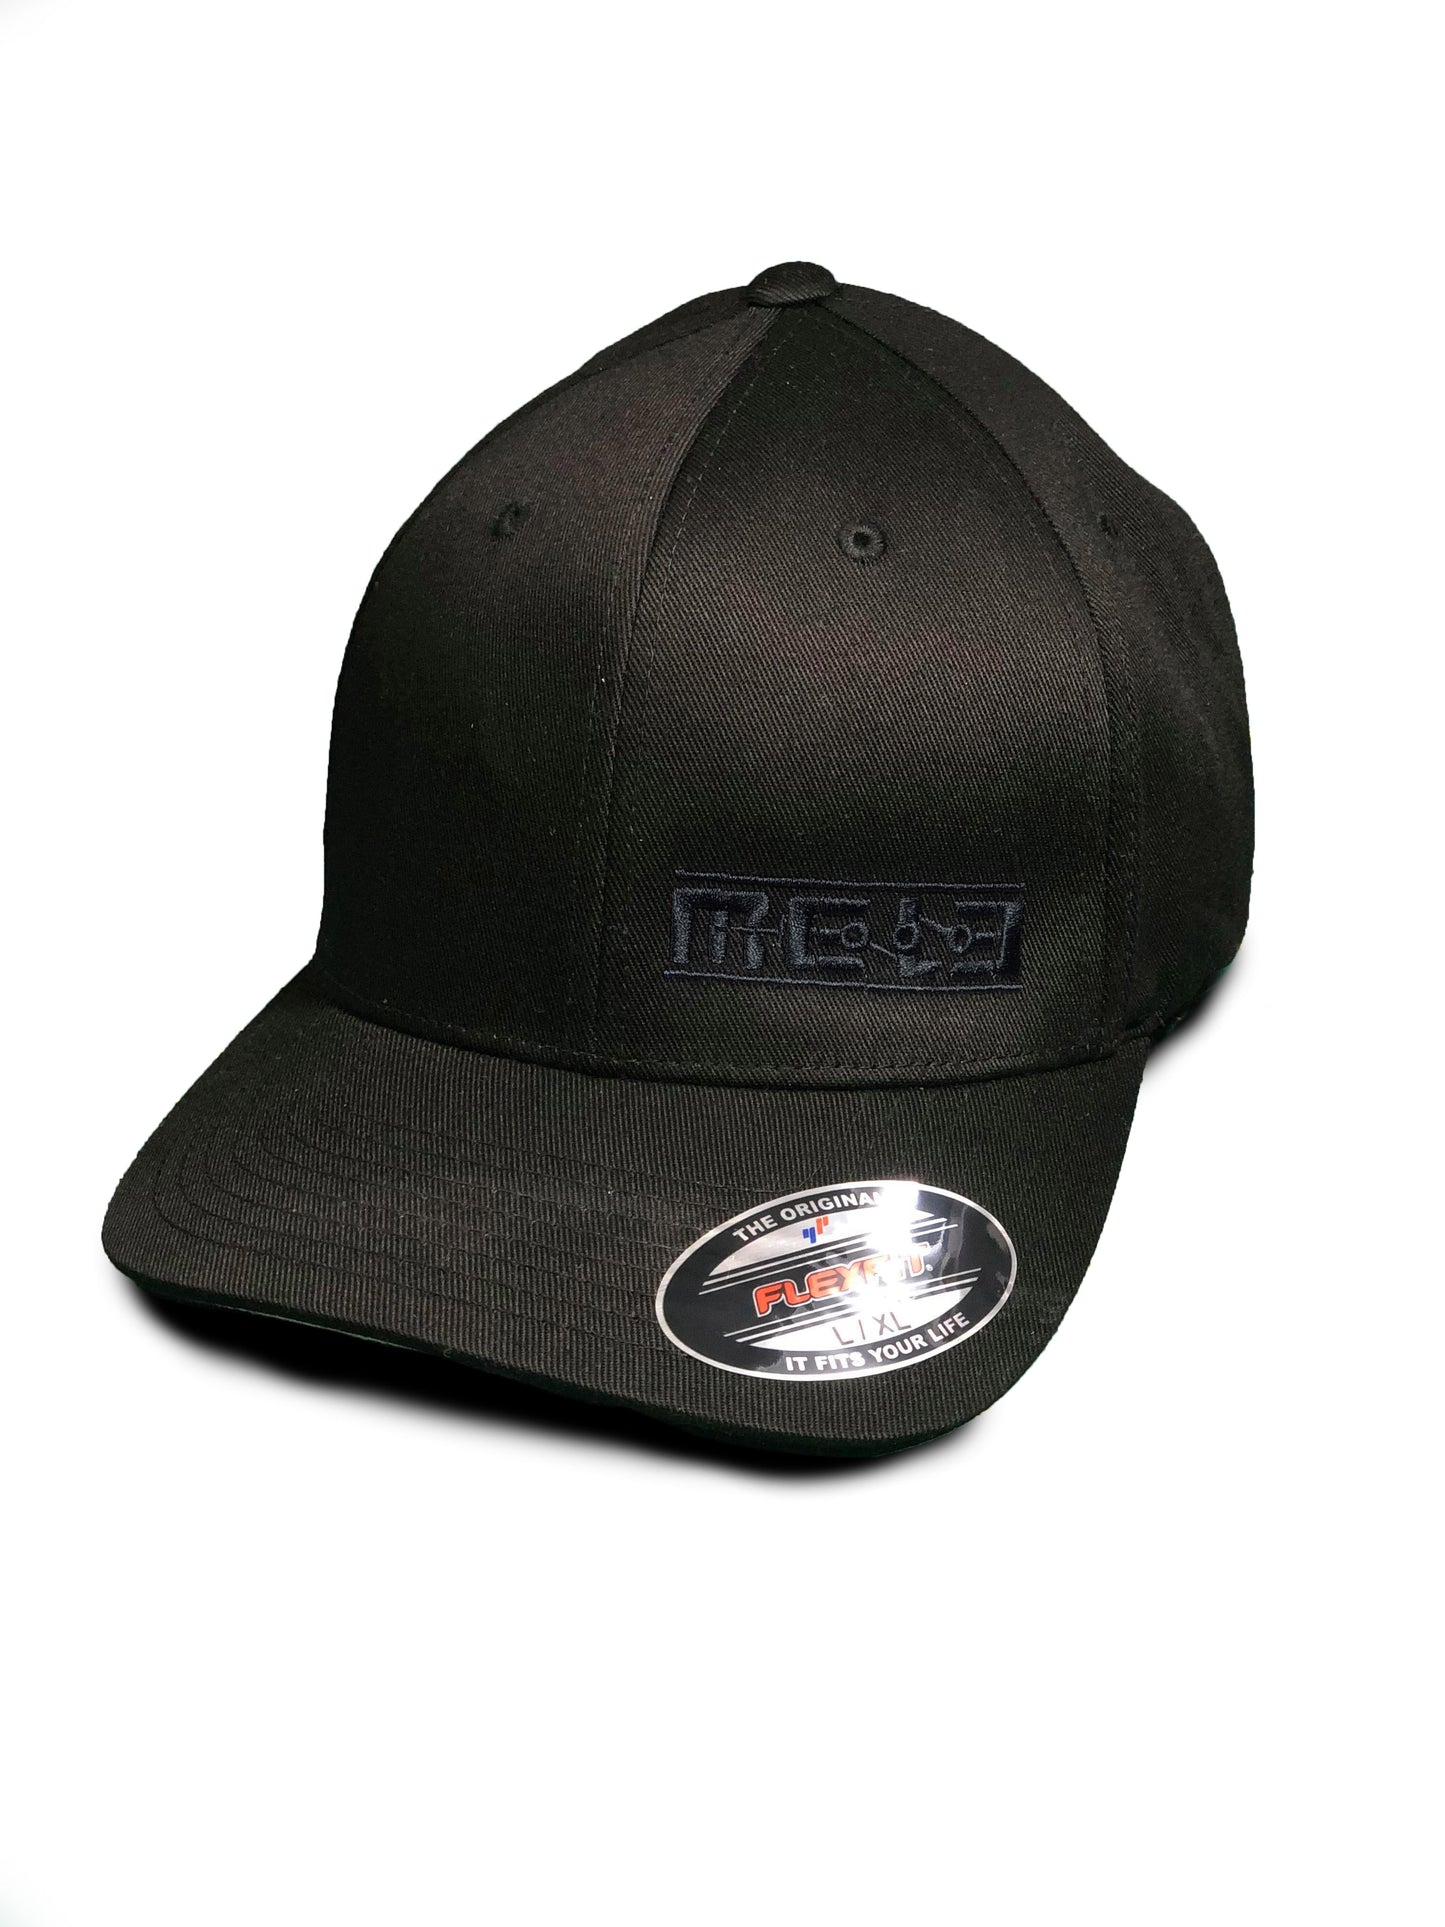 MeLe Flex Fit Hat Black Mele Design Firm